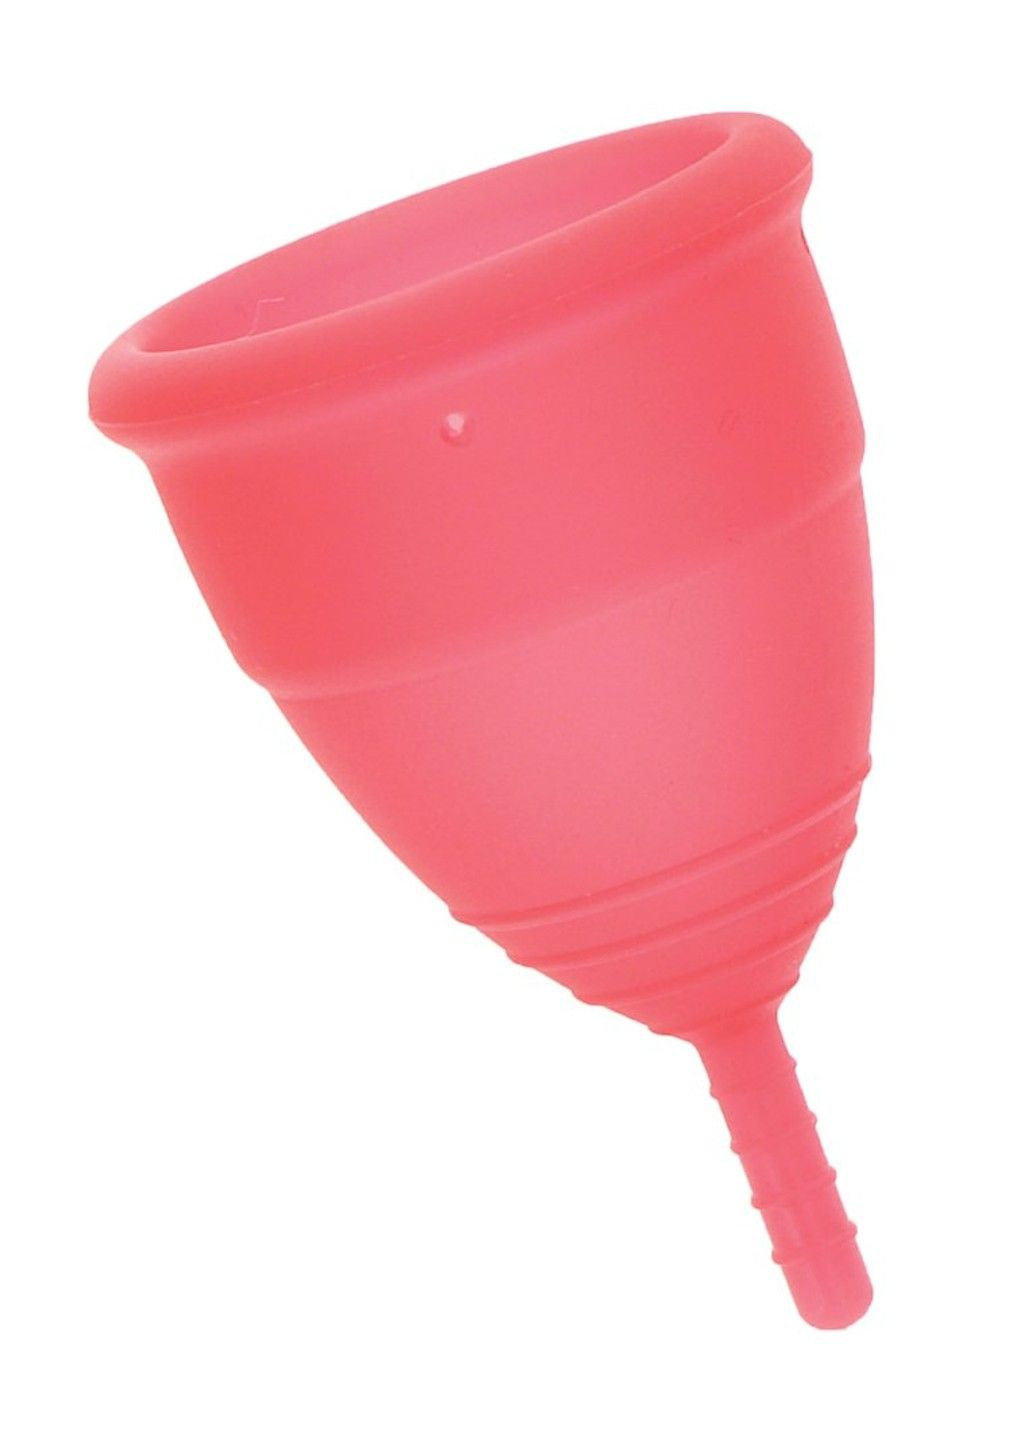 Менструальні чаші Intimate Health 2 Large Menstrual Cups Mae B (292011787)